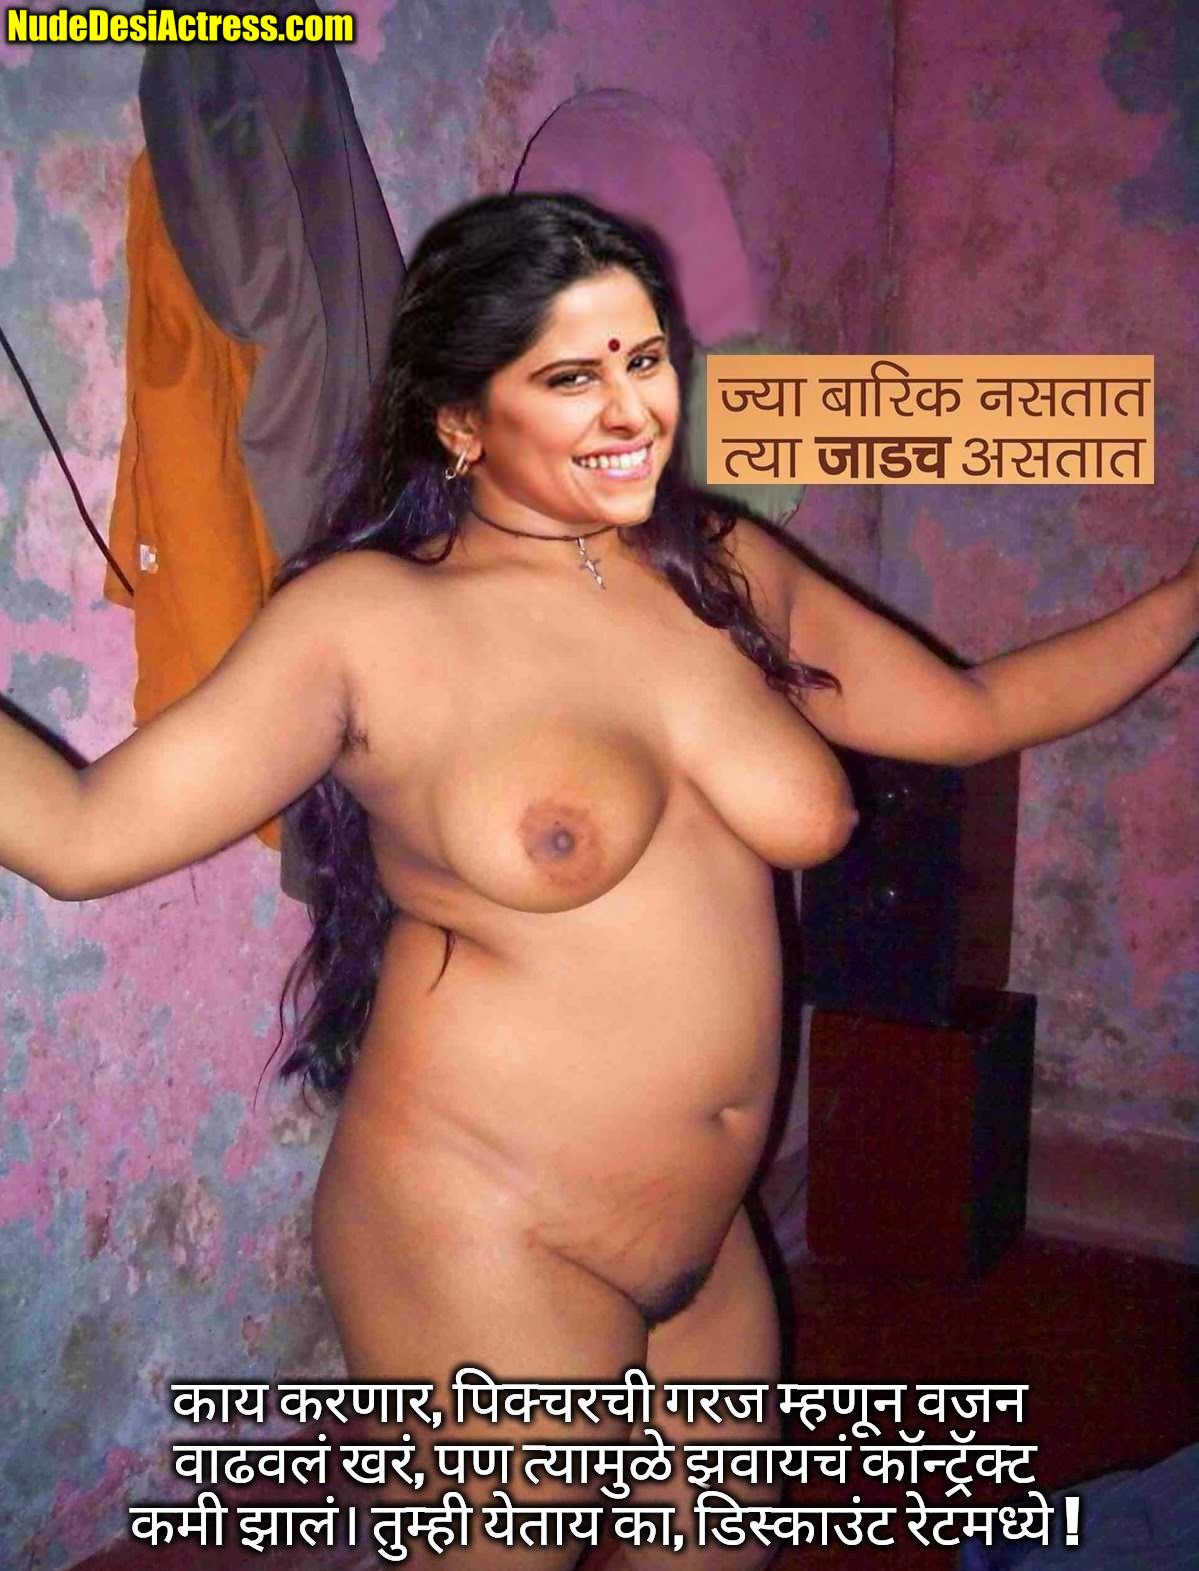 Sai Tamhankar naked fat body full nude photo leaked, Nude Desi Actress